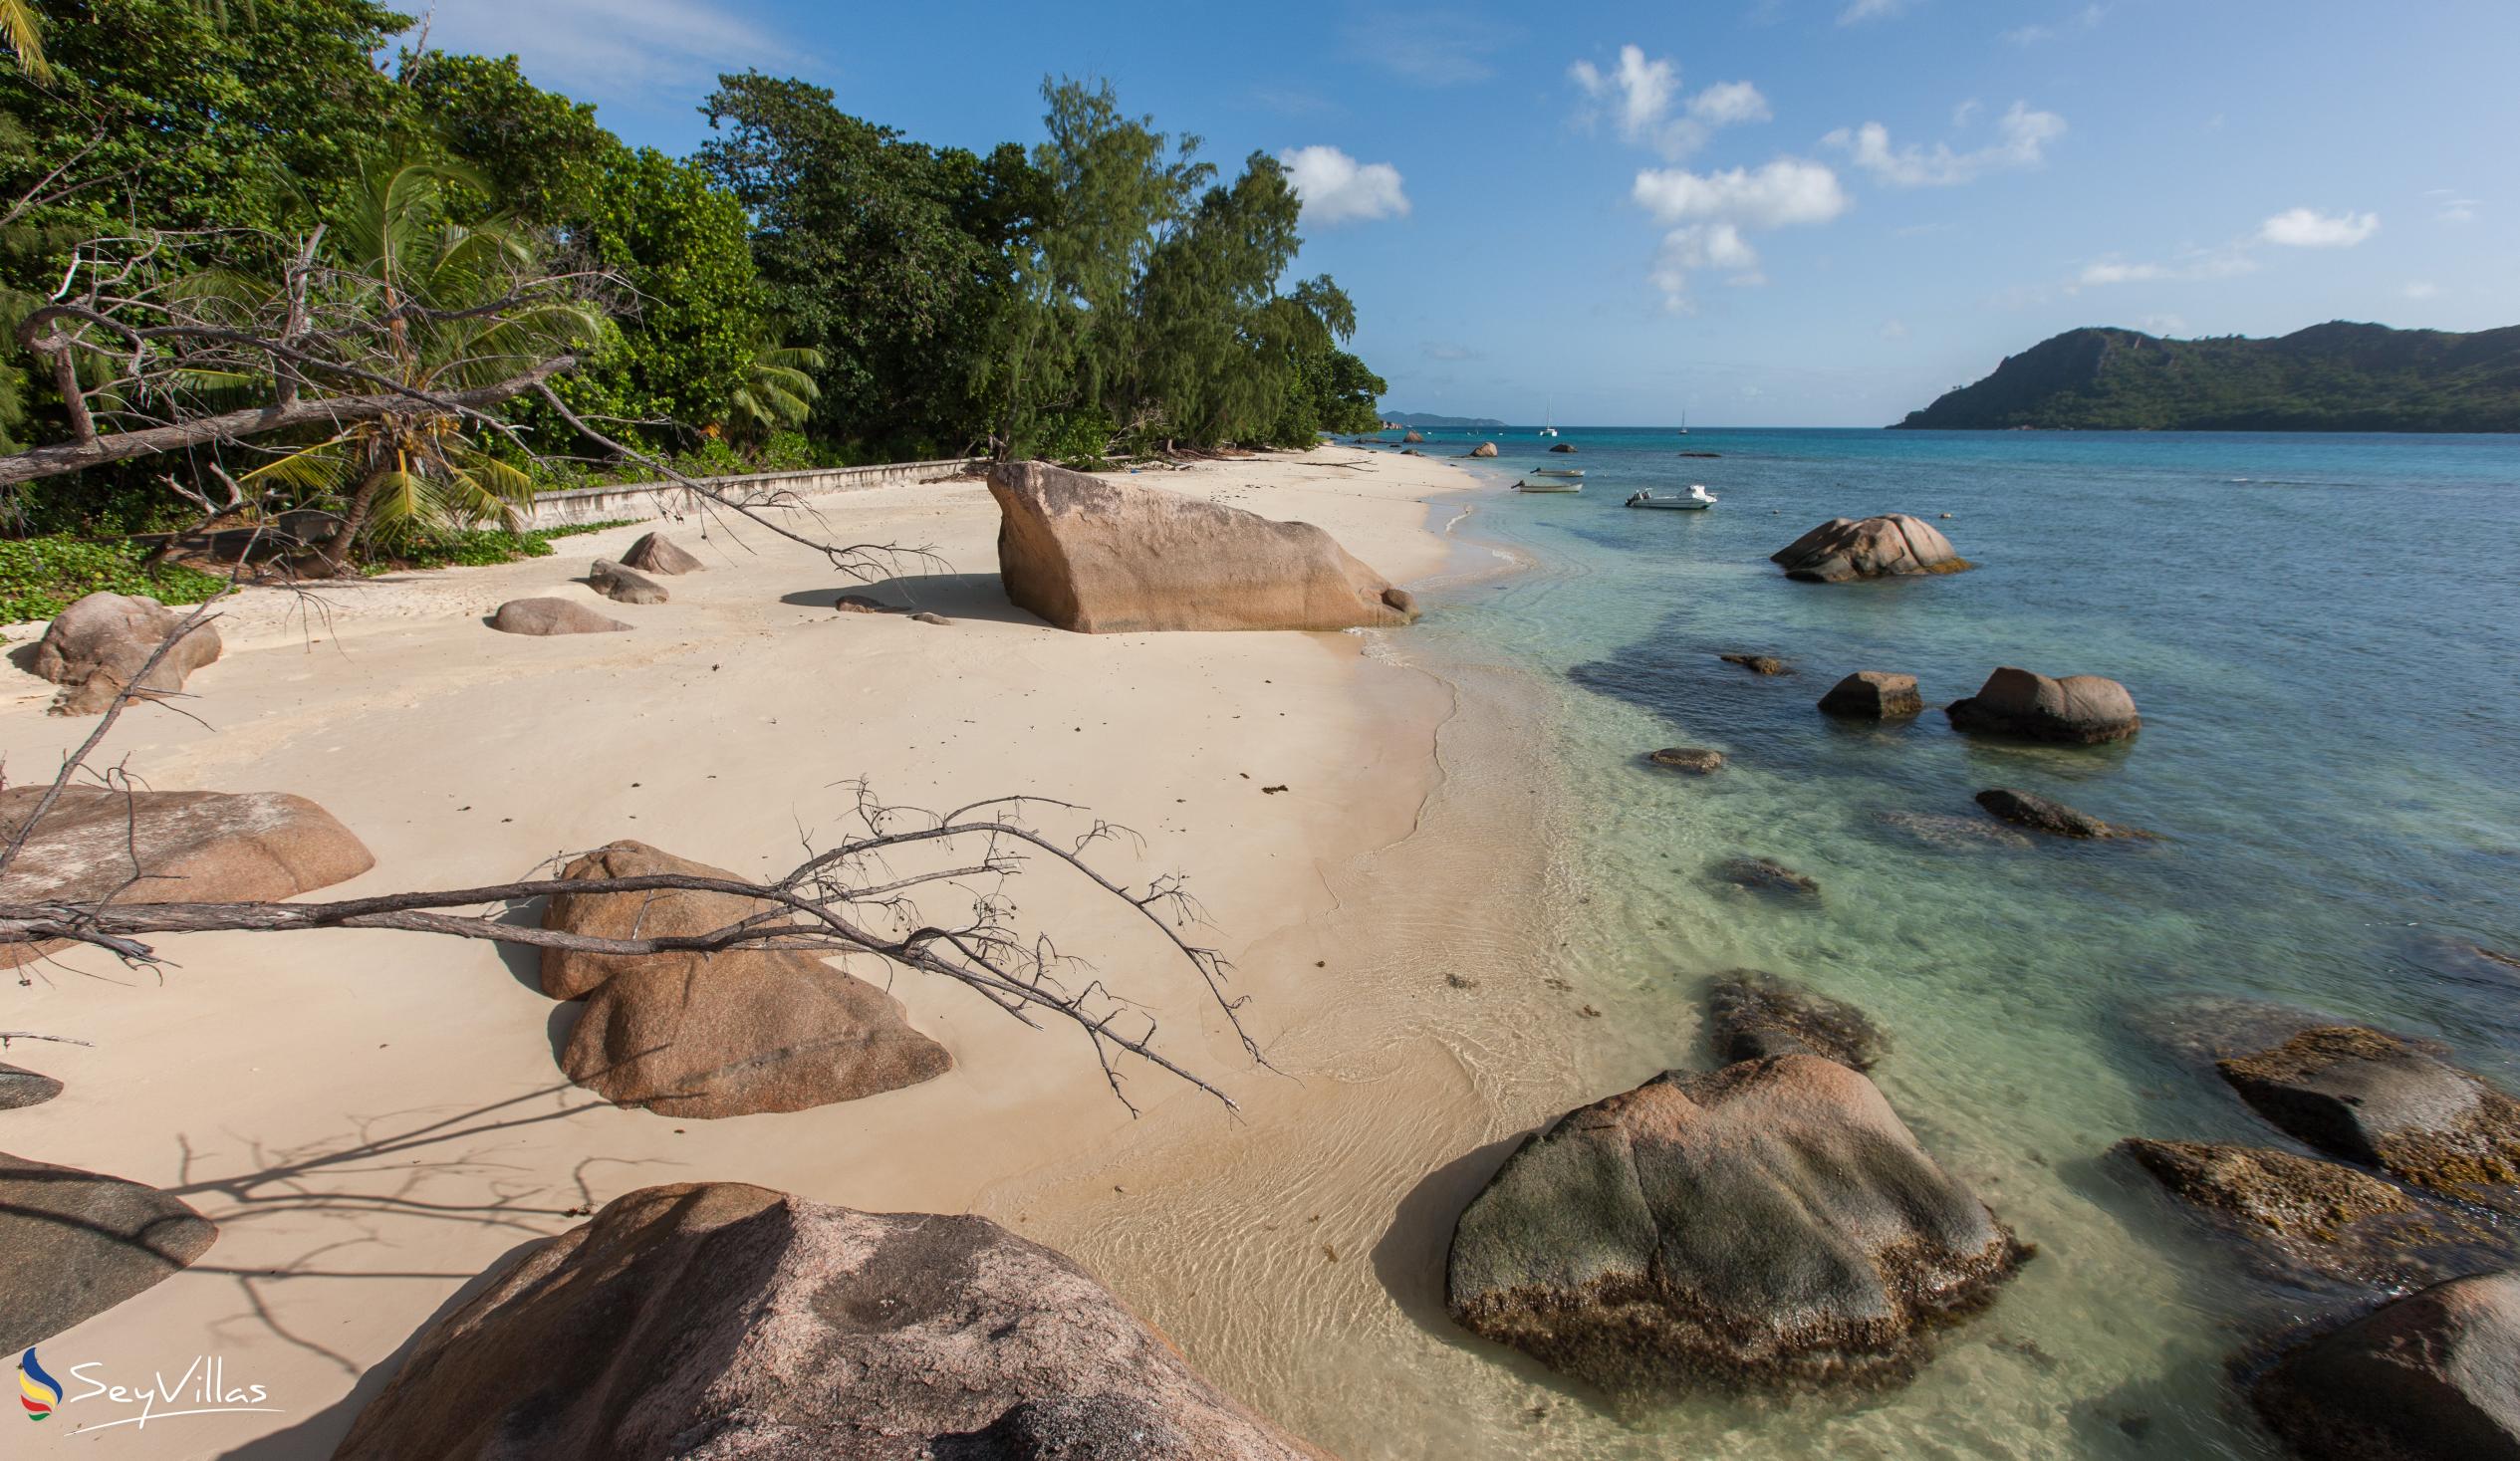 Foto 9: La Casa Grande - Posizione - Praslin (Seychelles)